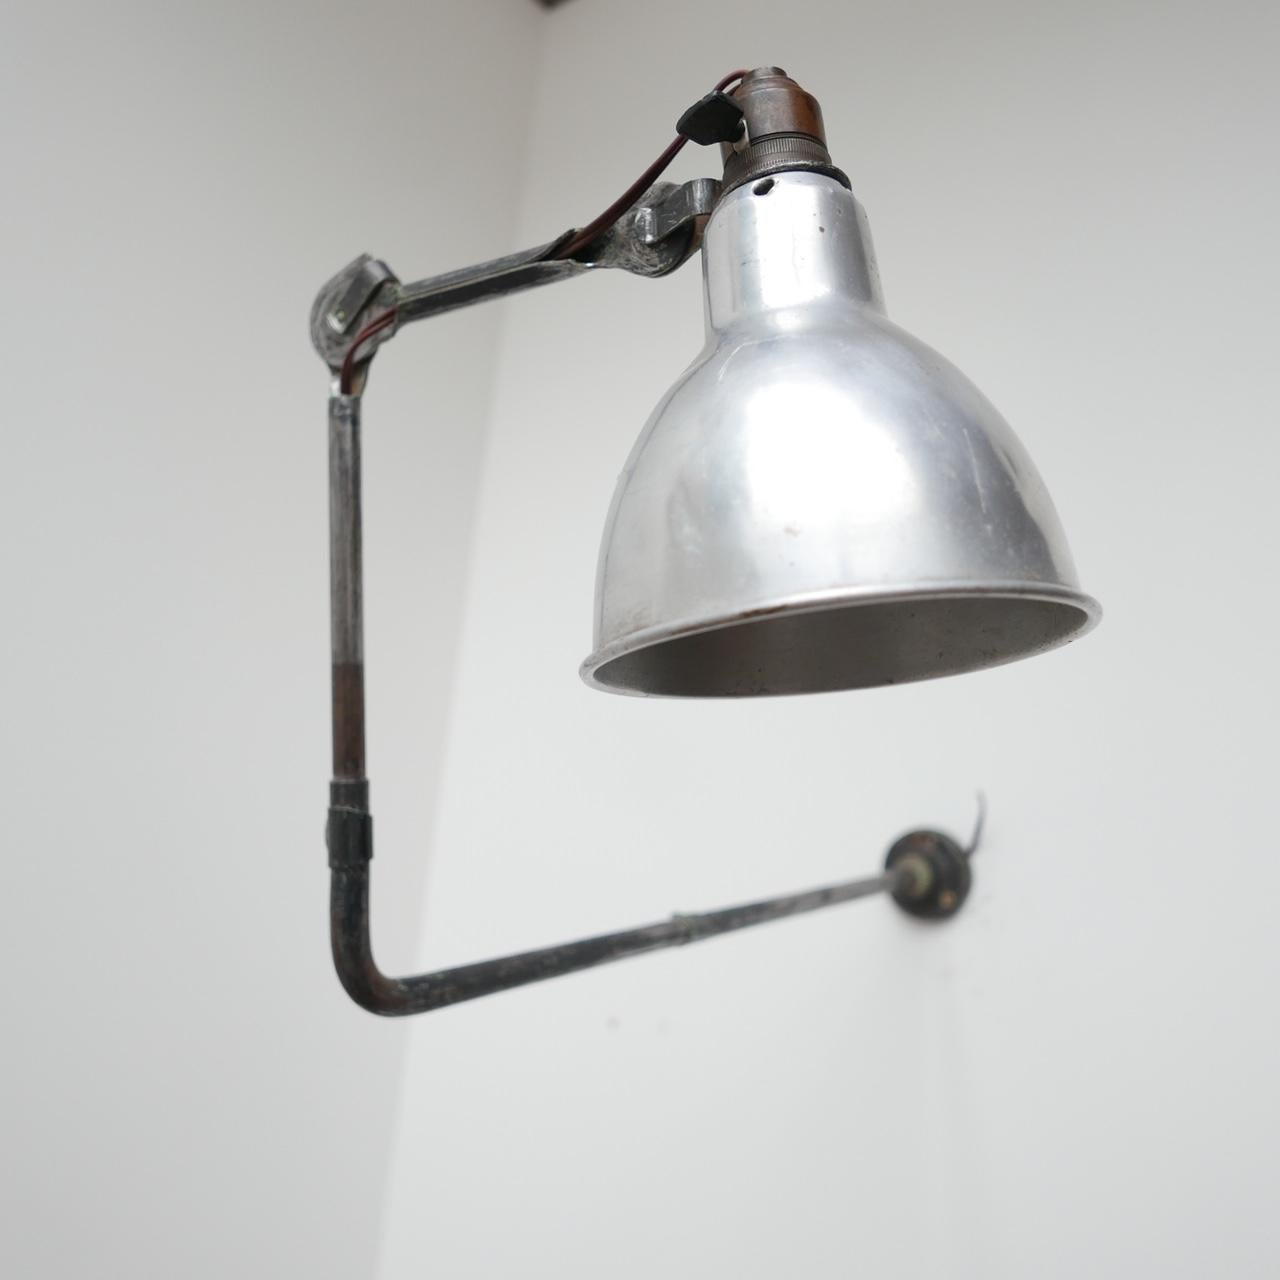 Une lampe incroyablement rare, modèle 310, de Bernard-Albin Gras.

Français, vers les années 1930. 

Montage mural. 

Réglable en de nombreux endroits, avec rotation dans les bras et au niveau de la tête. 
     

Depuis, le câblage a été